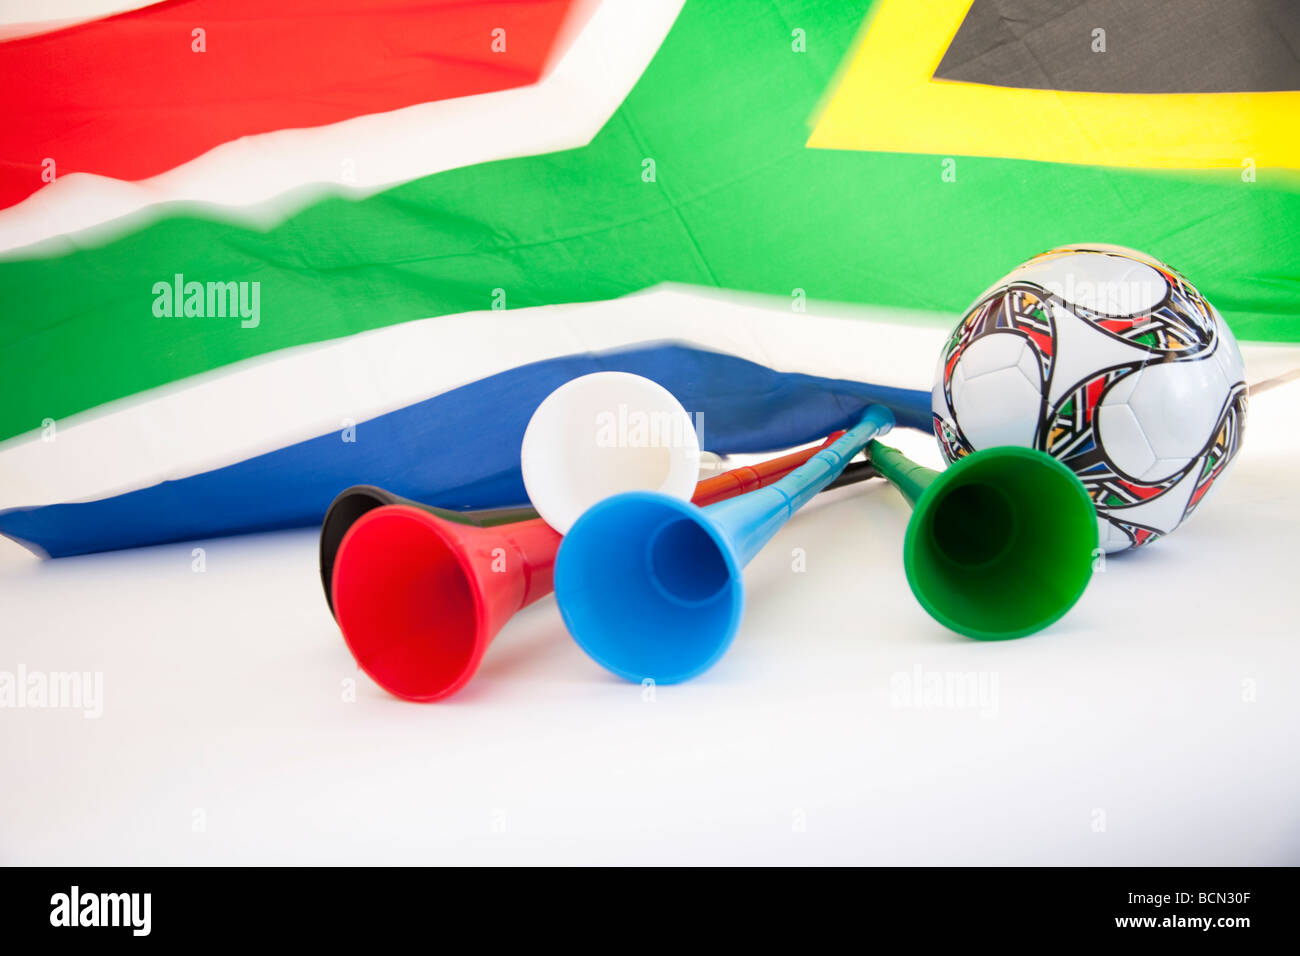 https://c8.alamy.com/compde/bcn30f/sudafrikanische-flagge-mit-vuvuzelas-und-einem-fussball-geschossen-auf-sauberen-weissen-hintergrund-winken-bcn30f.jpg